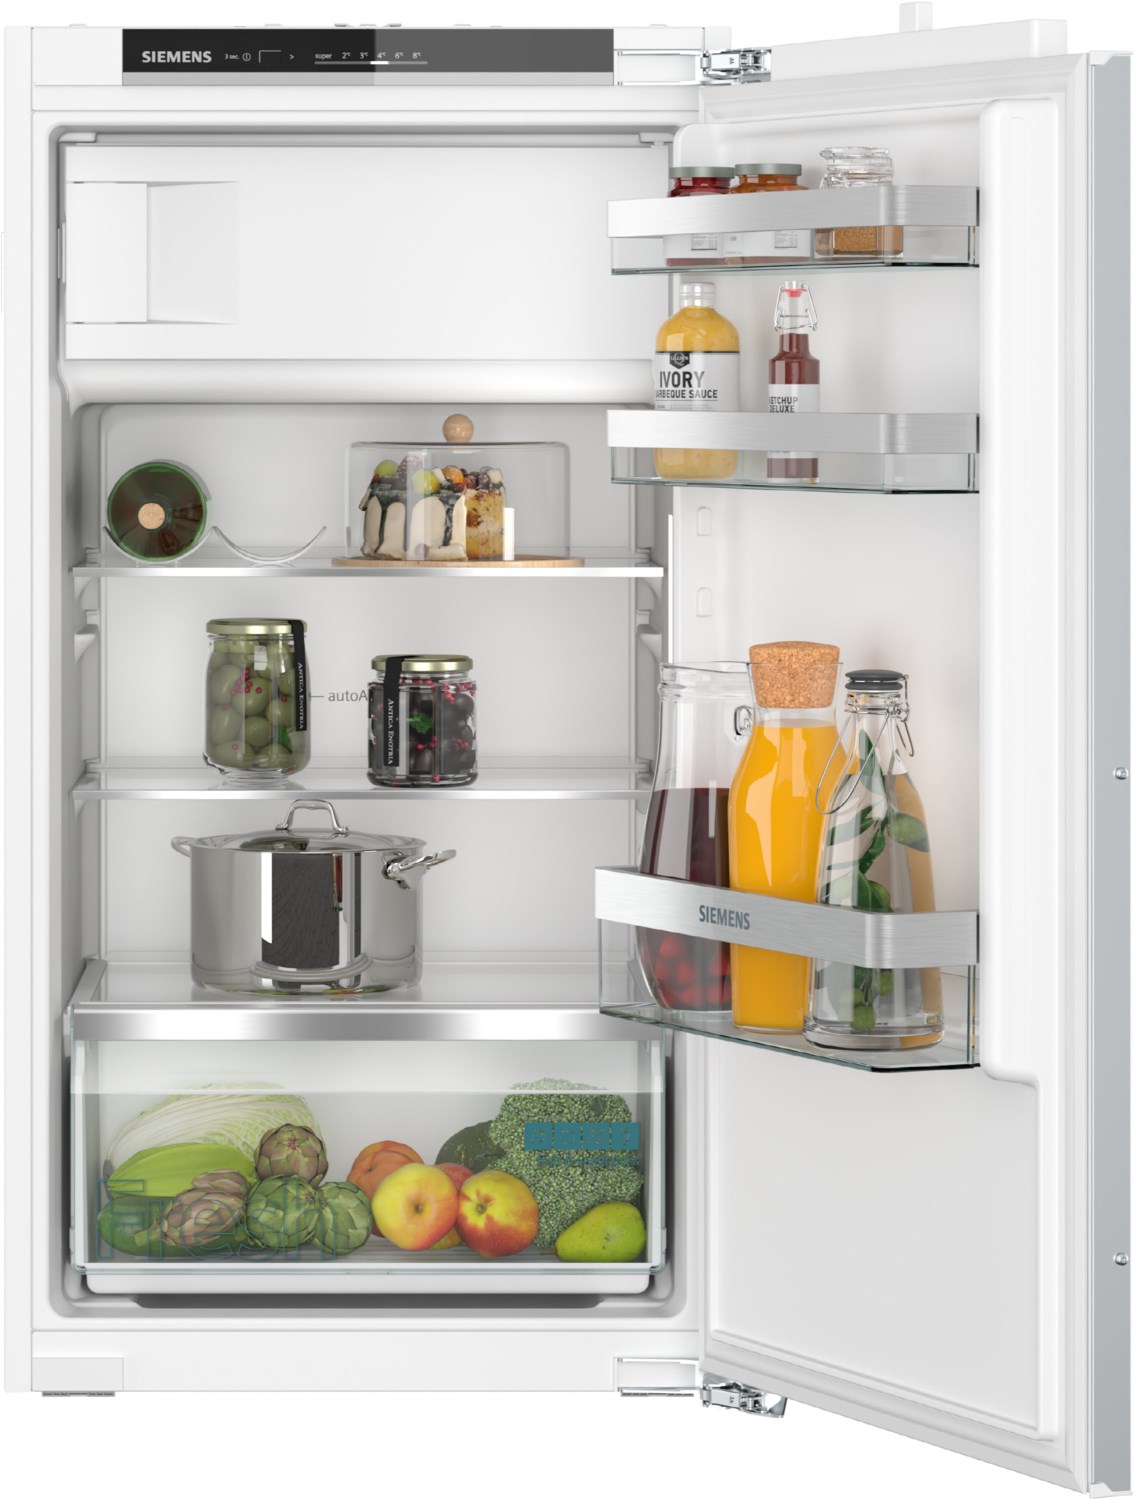 KI32LVFE0 Einbau-Kühlschrank mit Gefrierfach / E